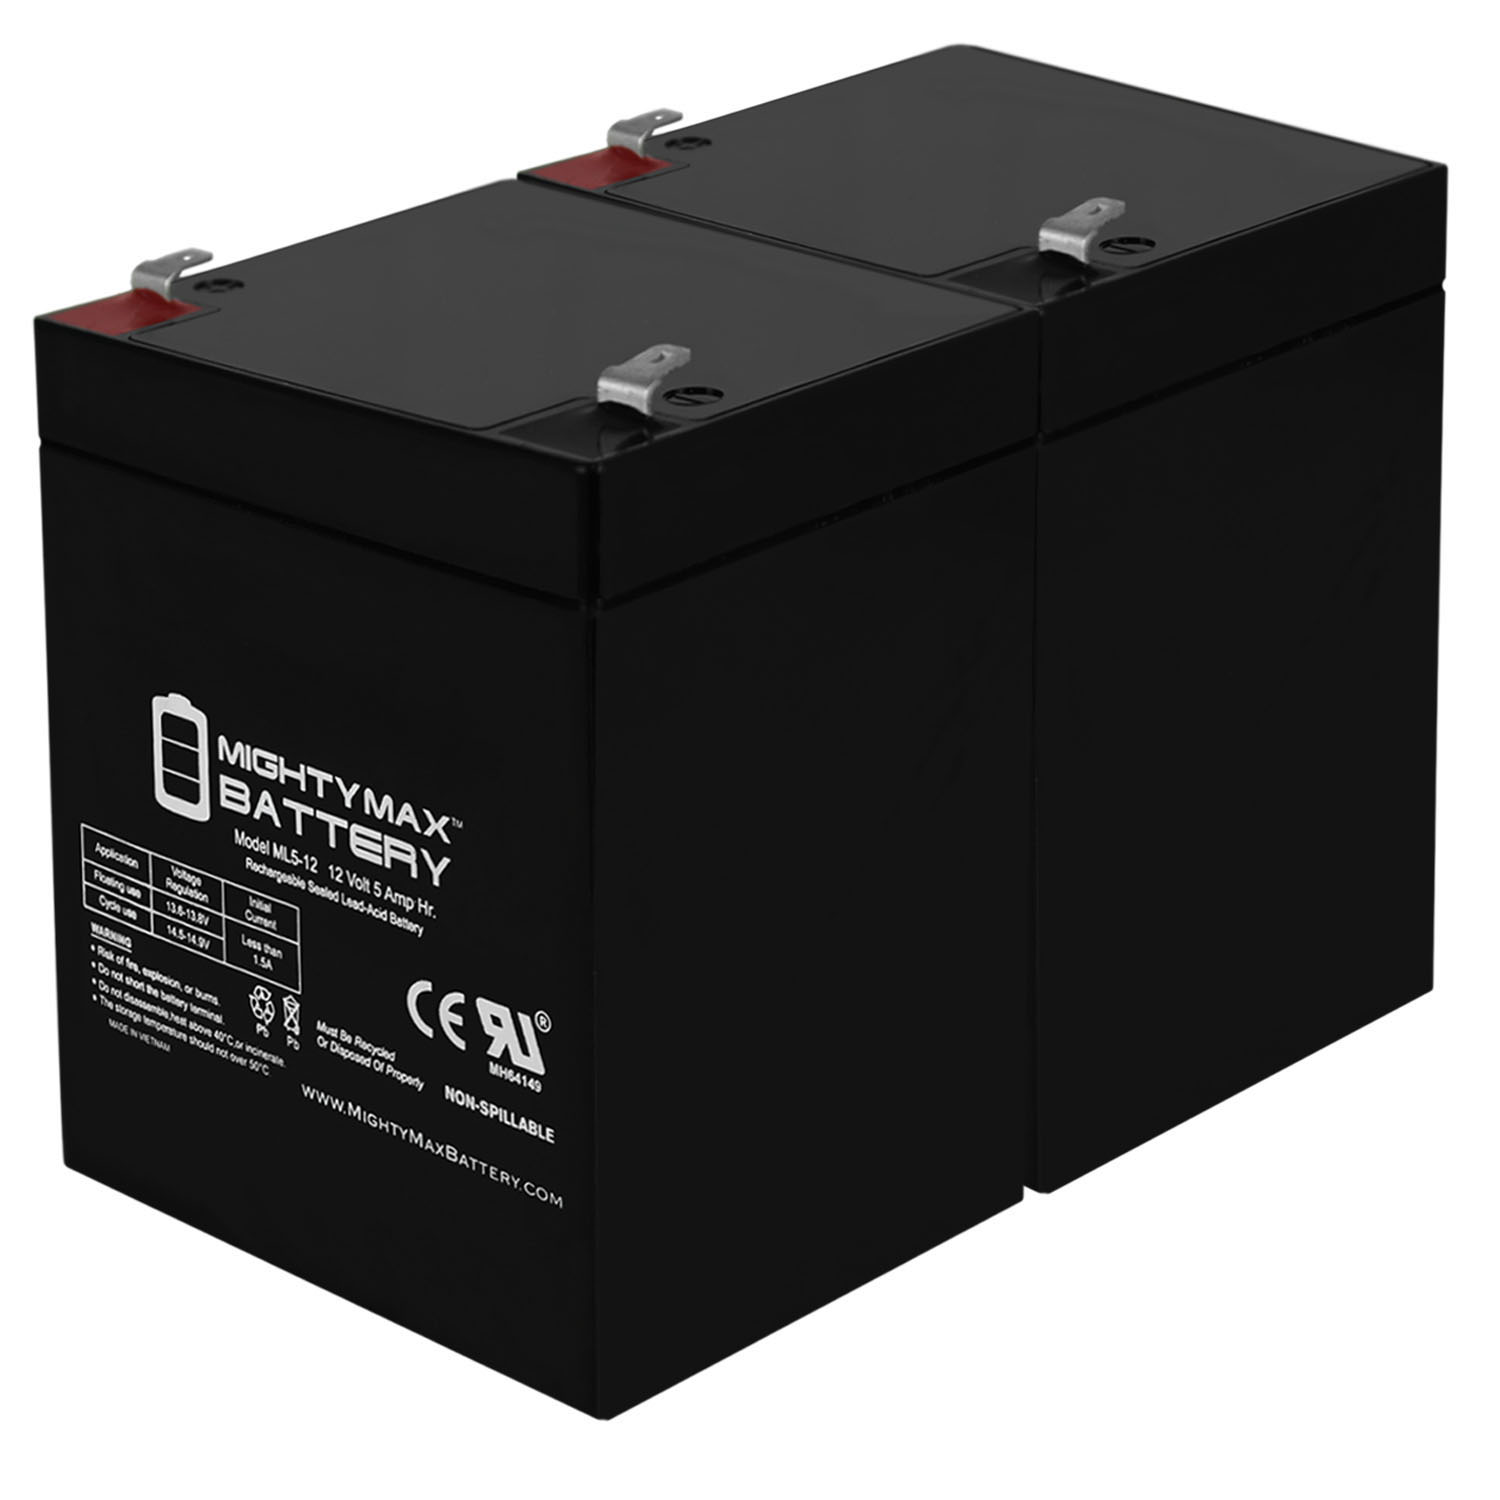 12V 5AH SLA Replacement Battery for Diamec DM12-4.2 - 2 Pack